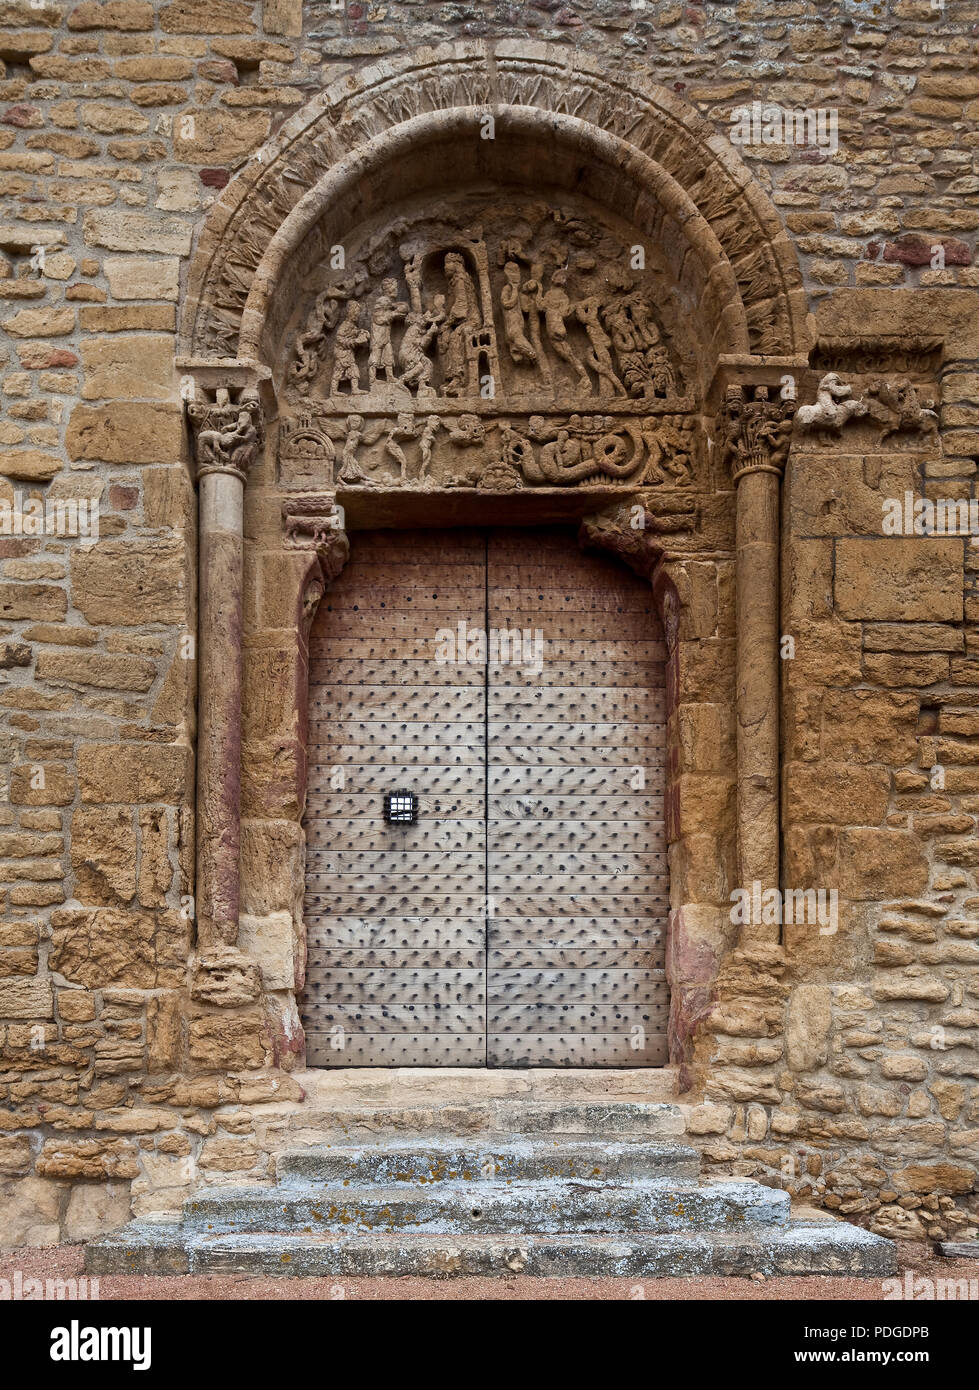 Anzy-le-Duc Burgund Prioratskirche erbaut 11-12 Jh. Portal in der südlichen Klostermauer im Tympanon links Anbetung der Könige rechts Sündenfall unten Stock Photo